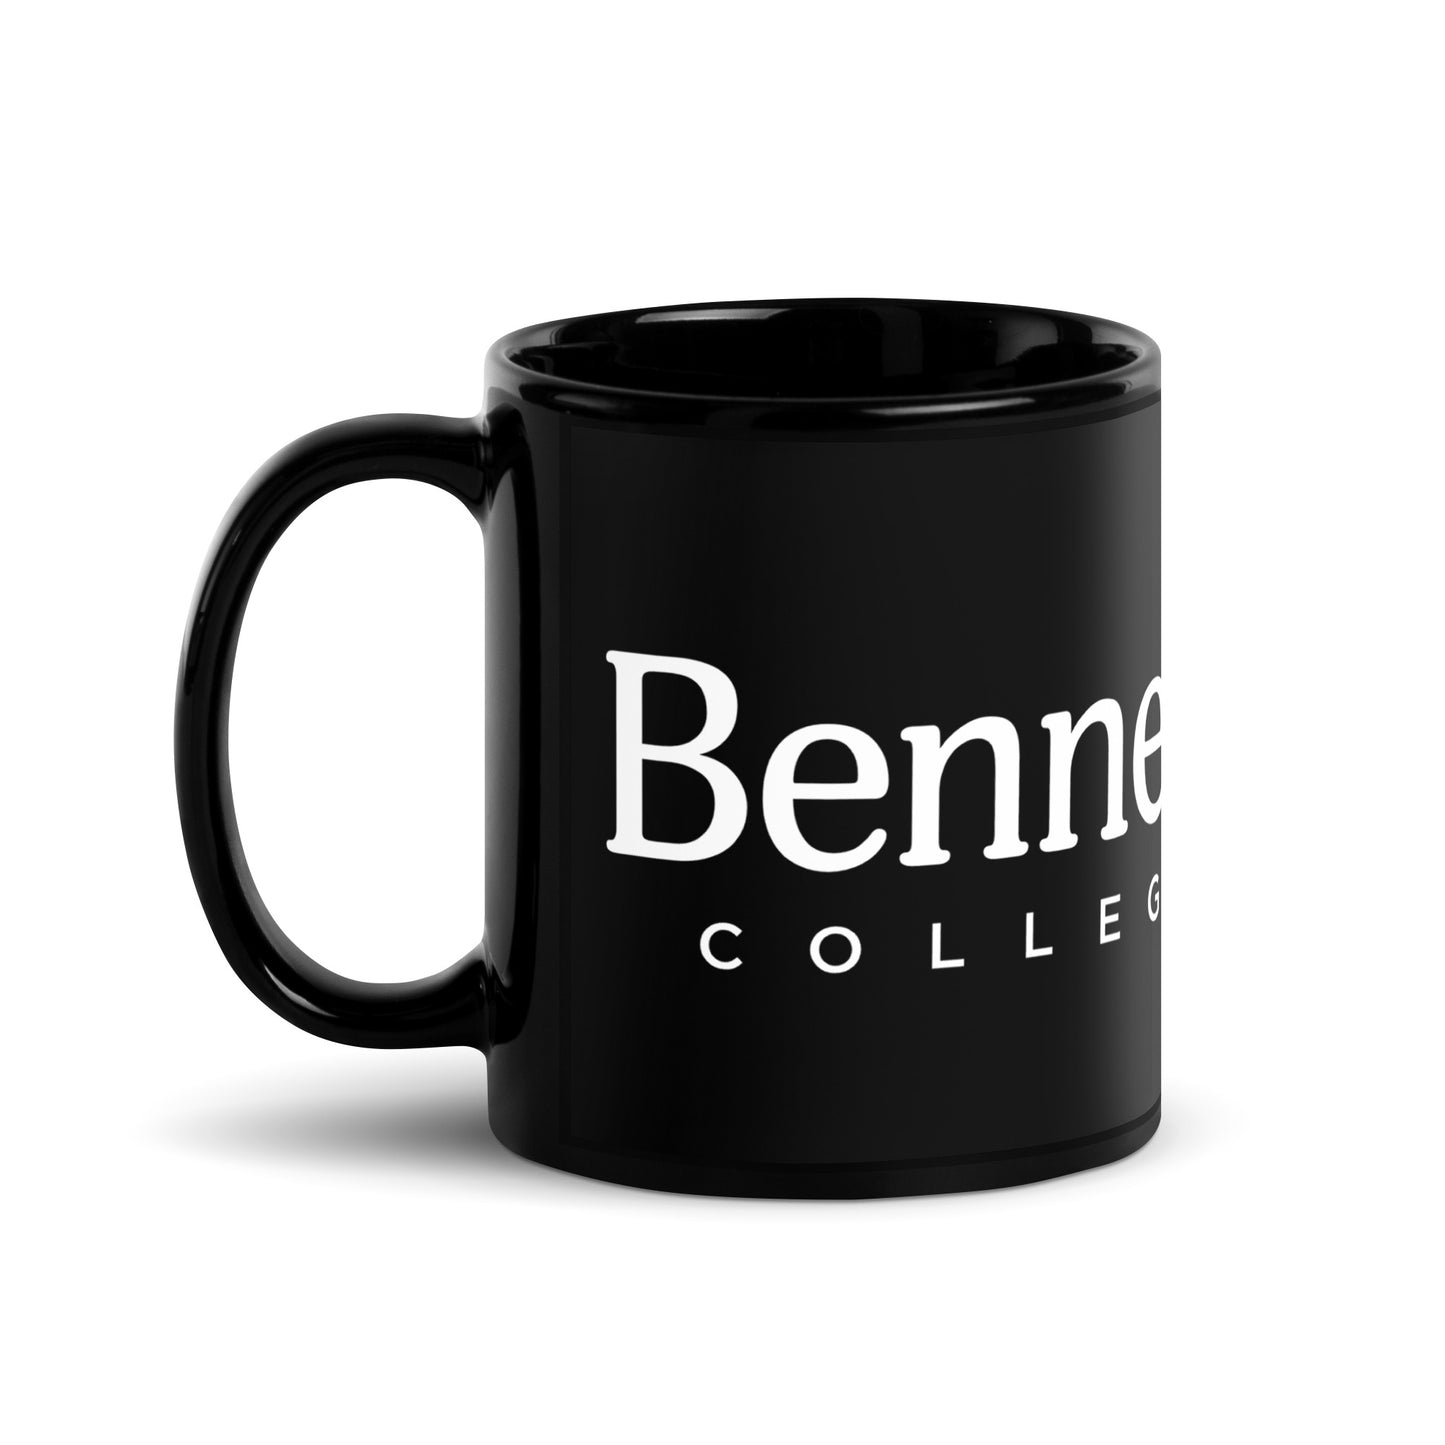 Bennett College Spire - Black Glossy Mug